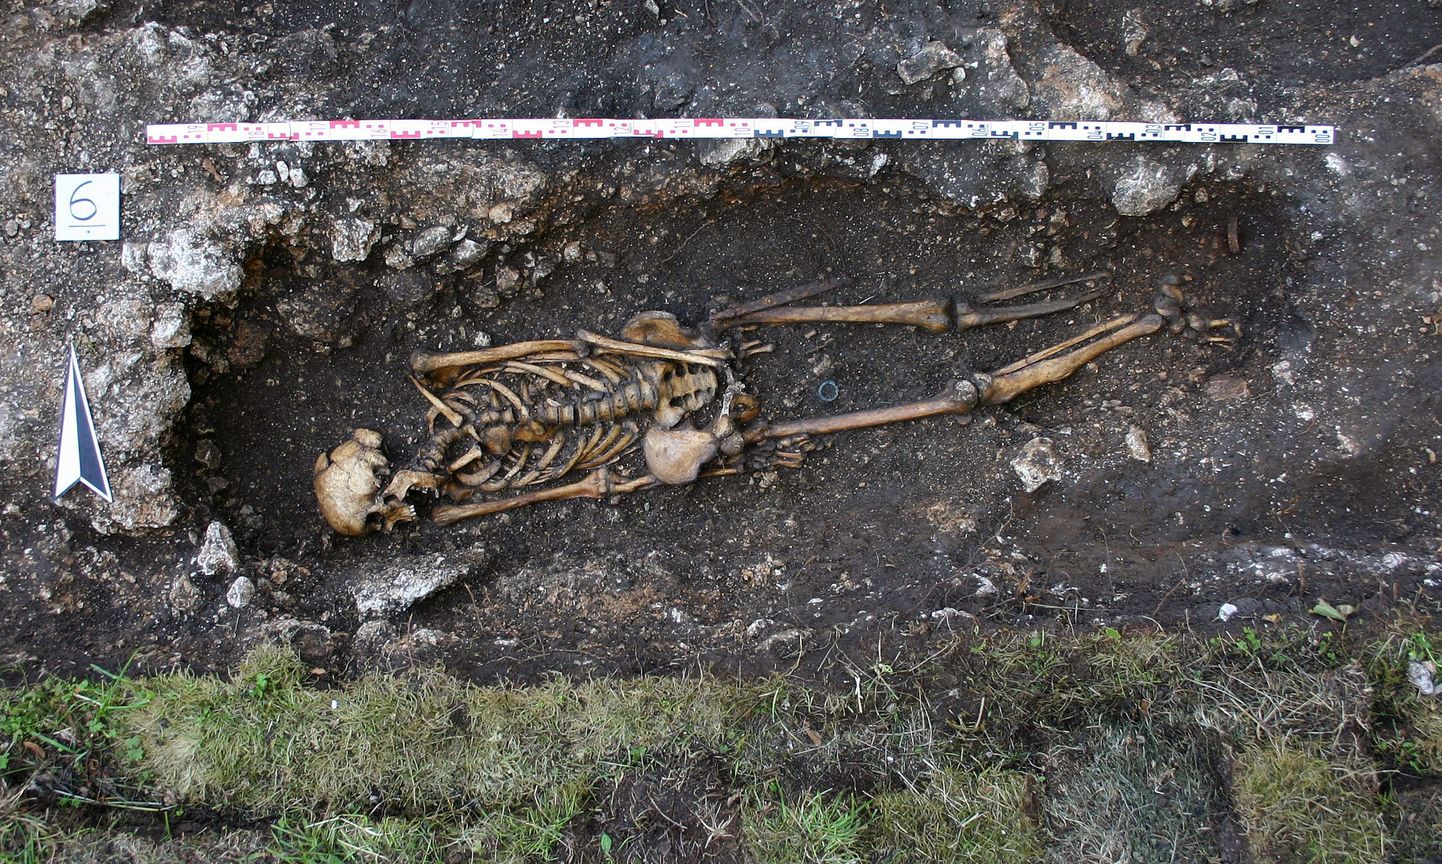 Hemmabergist leitud ühe jalaga mehe säilmed.